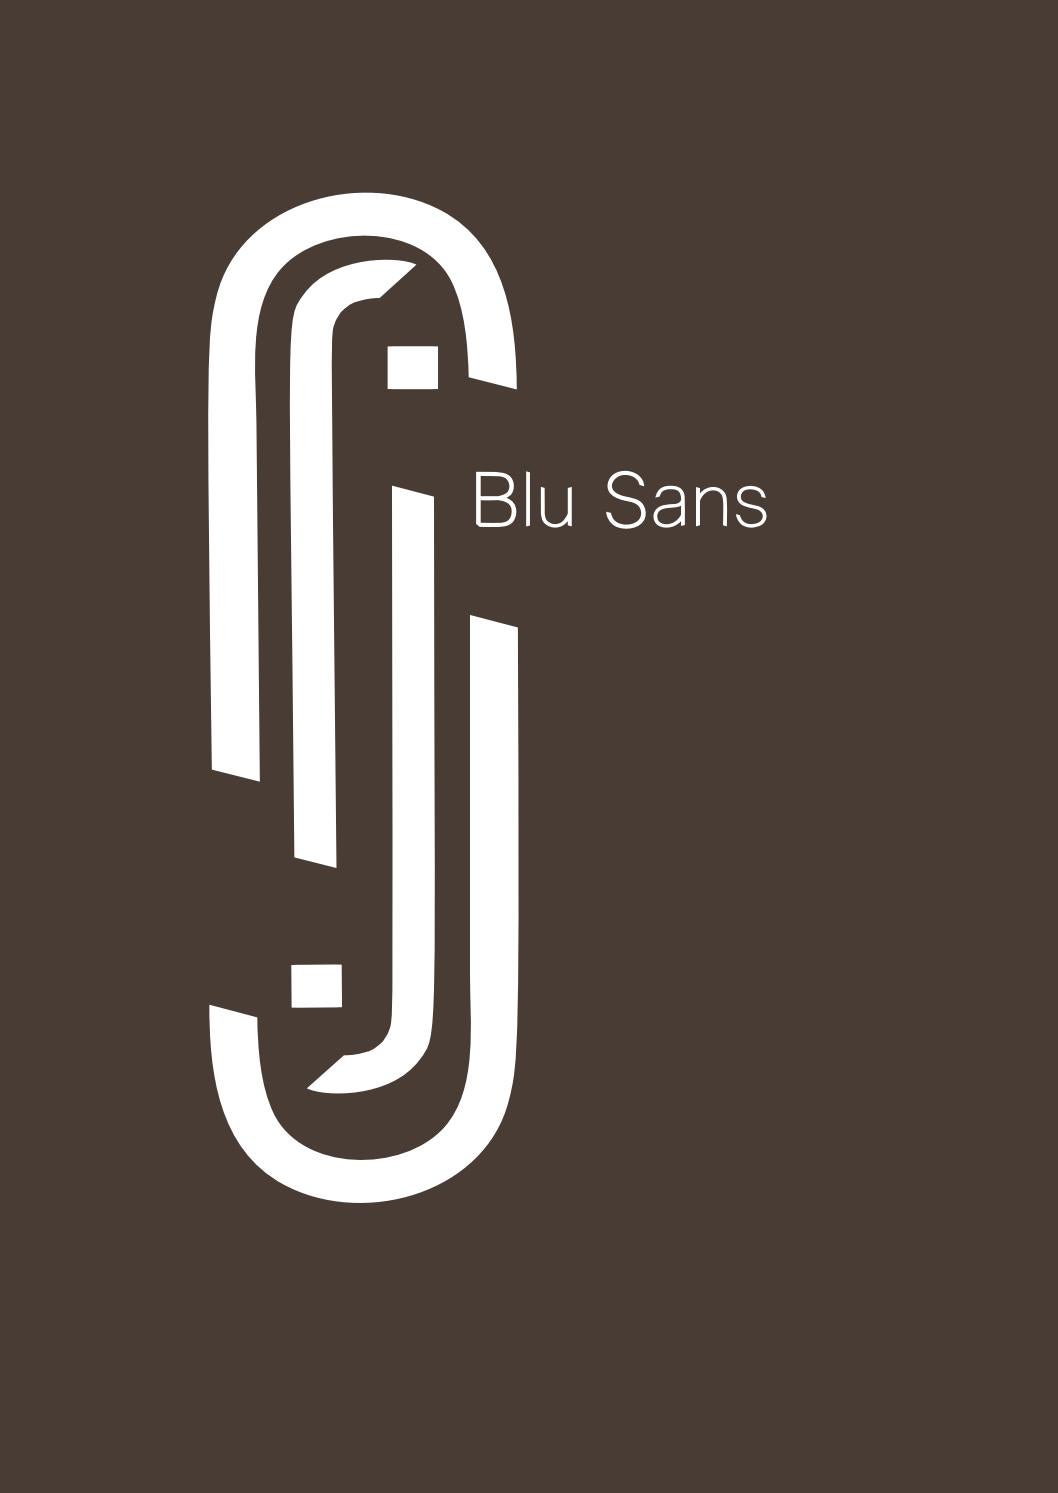 Ejemplo de fuente Blu Sans Light